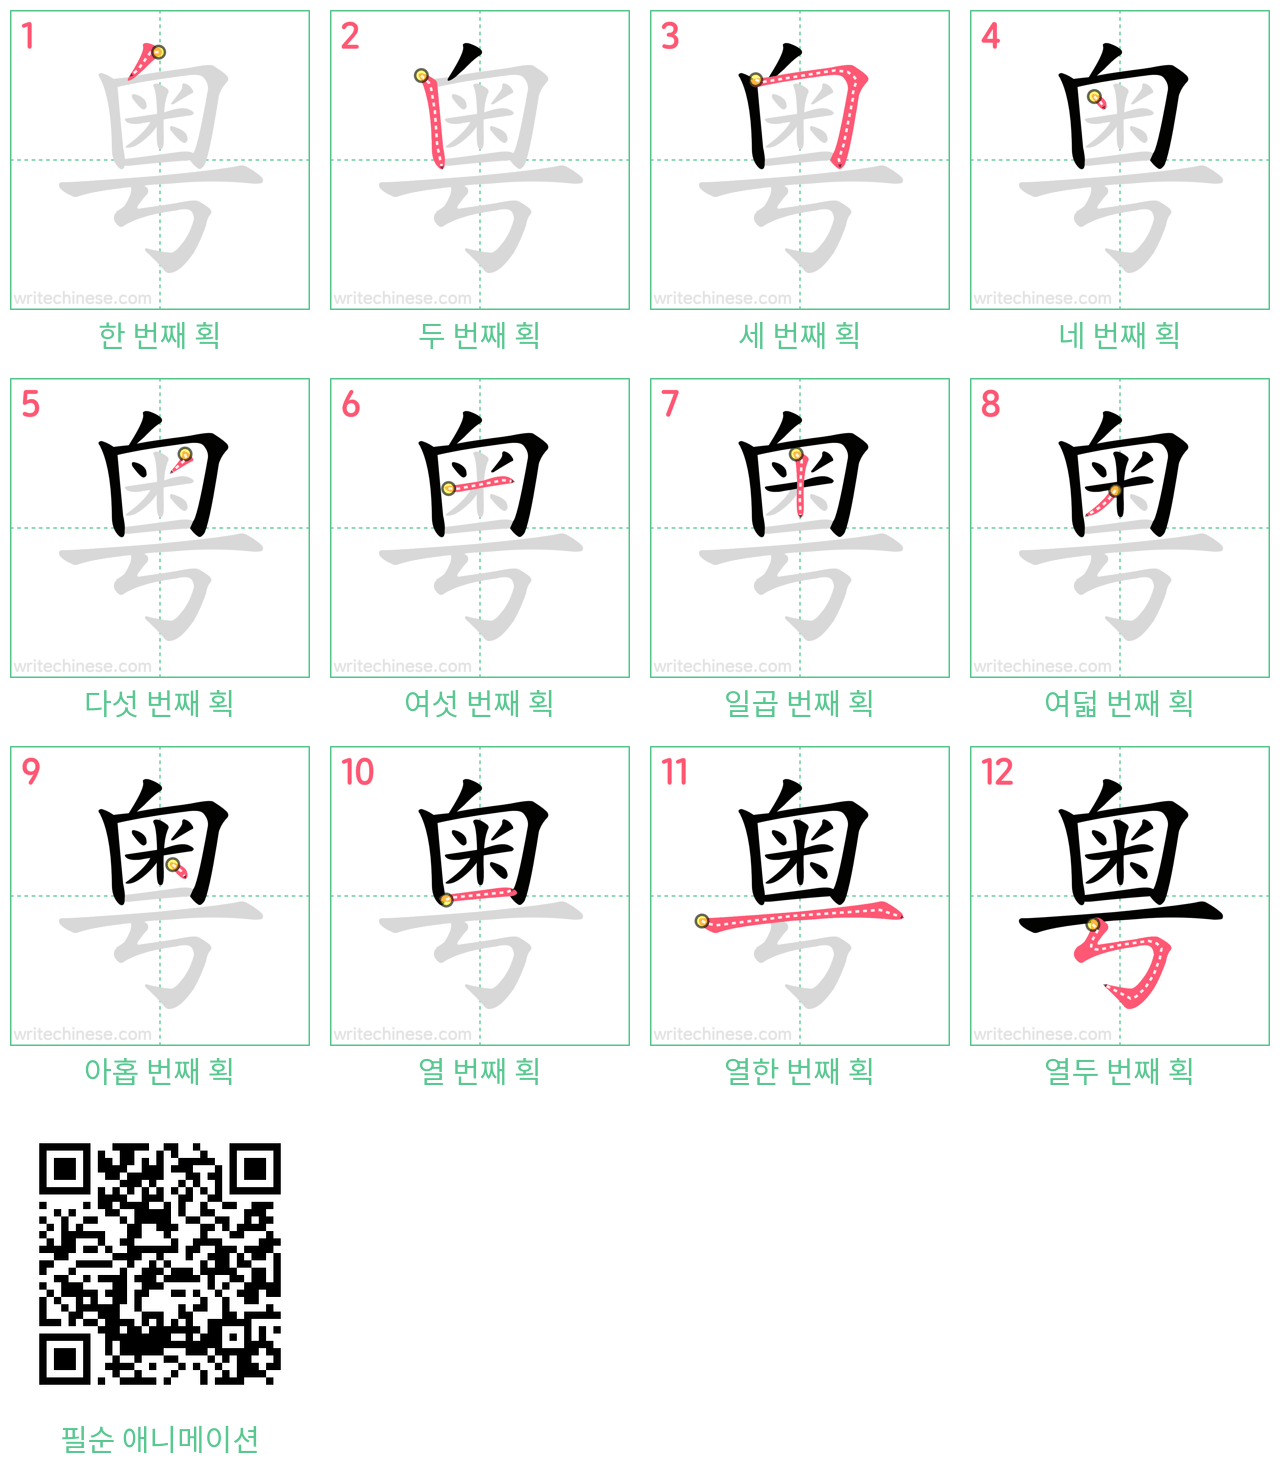 粤 step-by-step stroke order diagrams